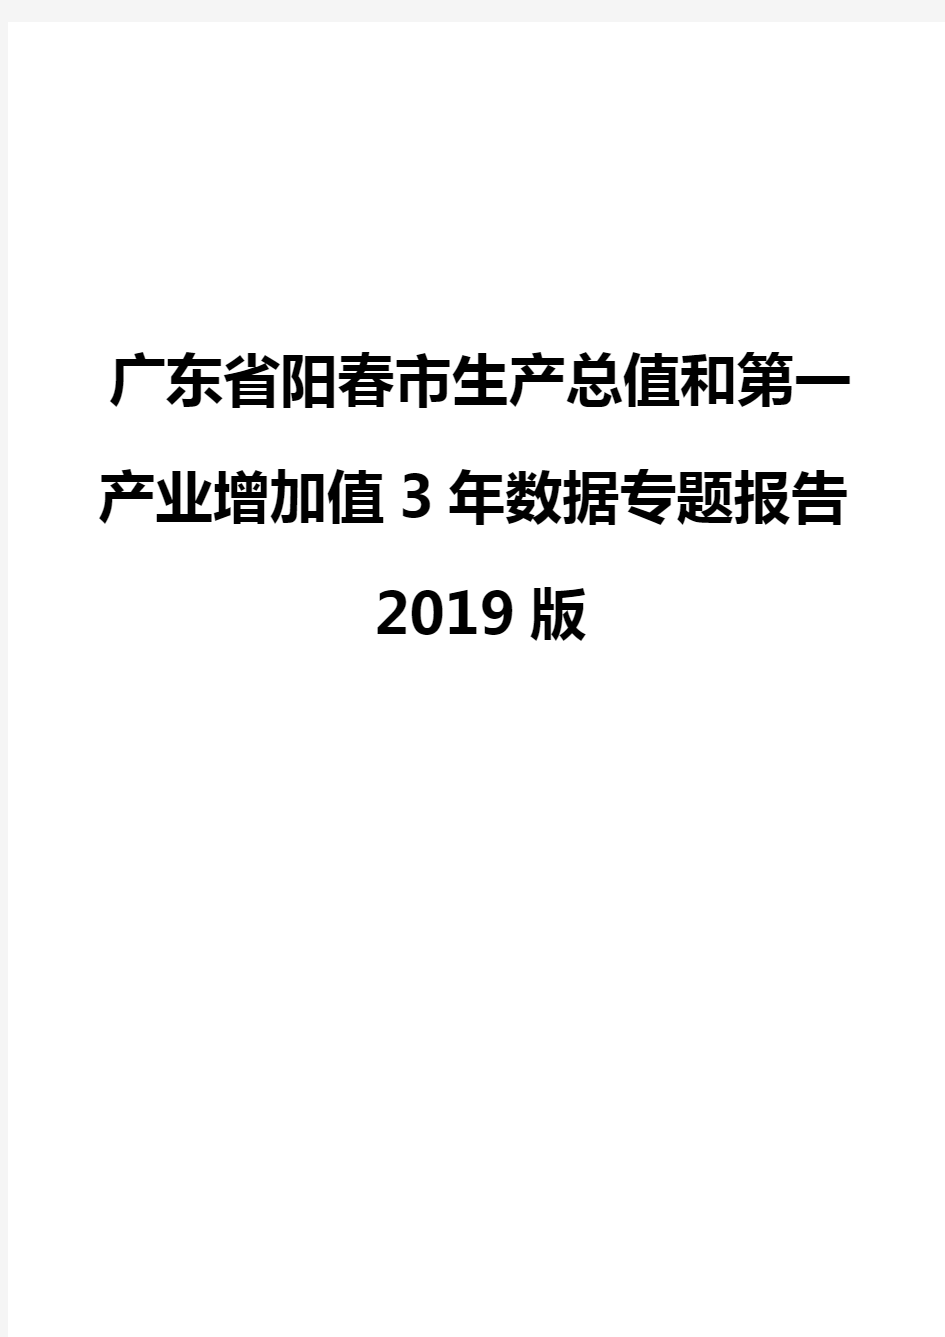 广东省阳春市生产总值和第一产业增加值3年数据专题报告2019版